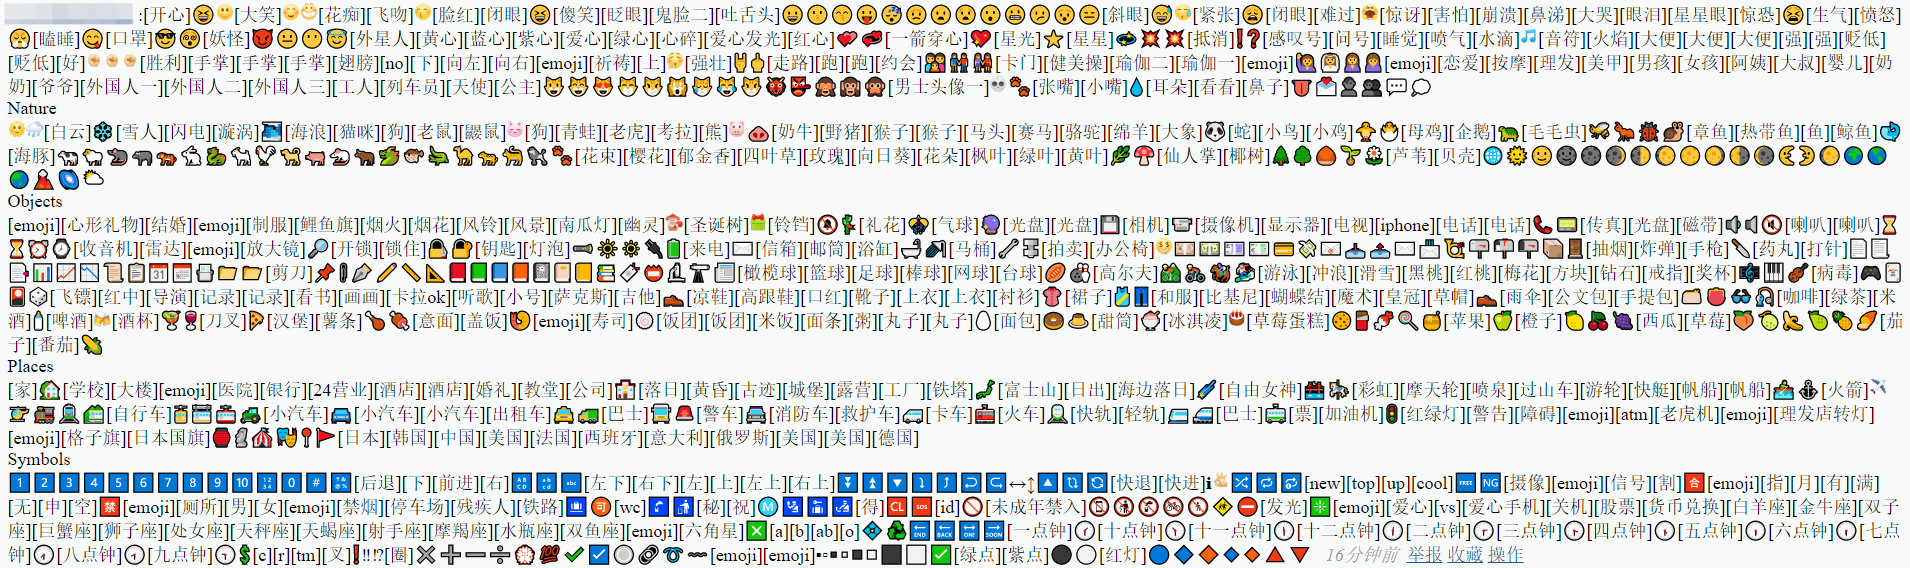 发布后的 Unicode 表情